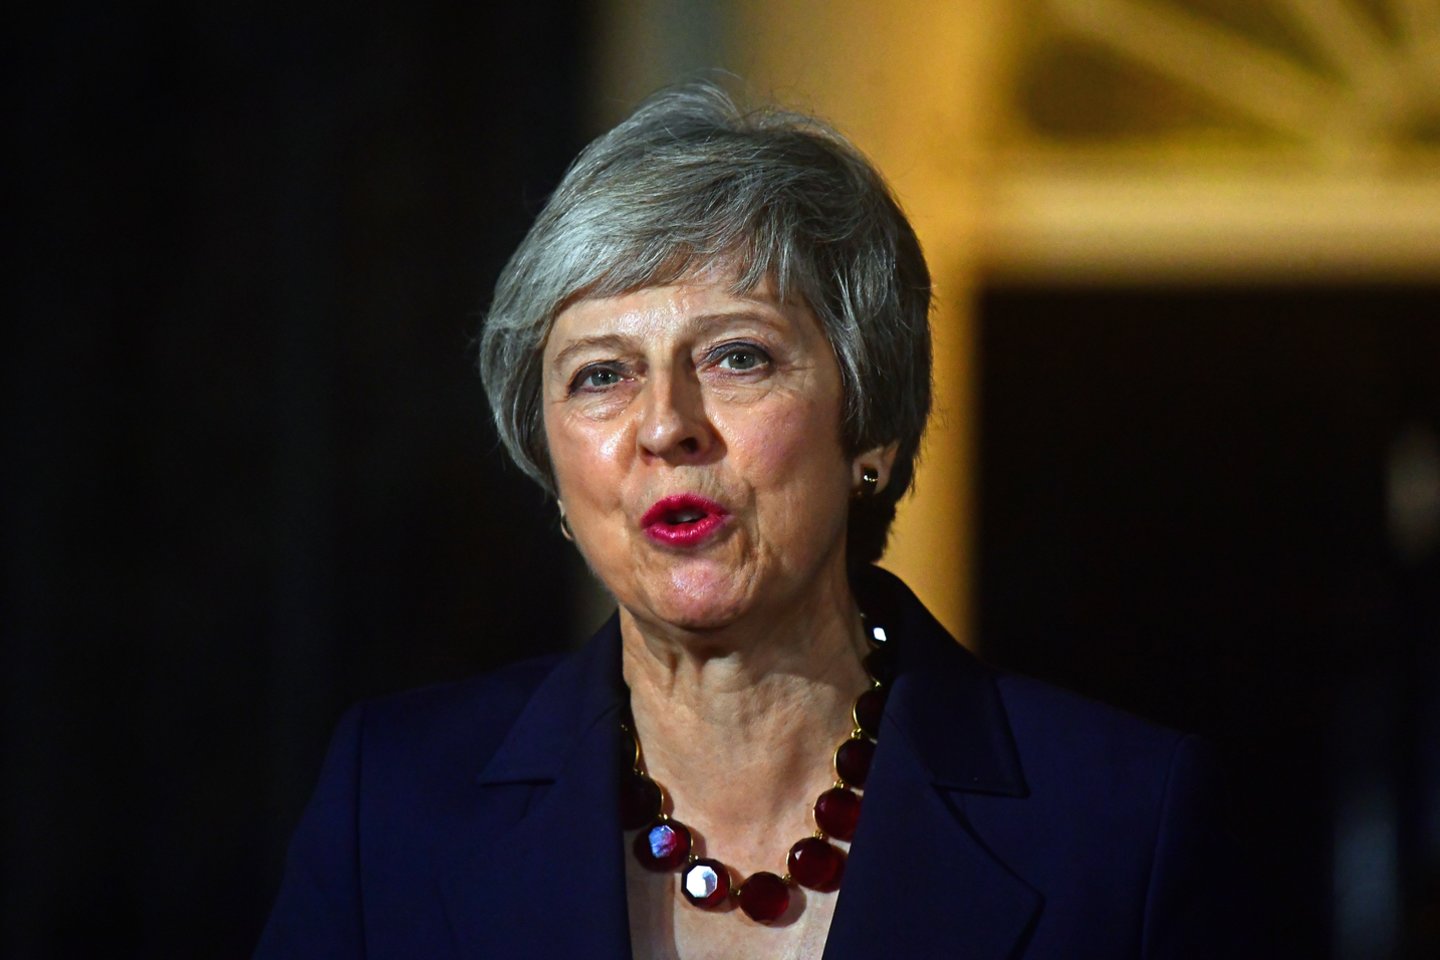 Jungtinės Karalystės ministrė pirmininkė Theresa May penktadienį tiesiogiai kreipėsi į rinkėjus prašydama paremti jos „Brexit“ planą ir laukia, ar oponentai jos pačios partijoje sutelks pakankamą paramą, kad galėtų mesti iššūkį jos vadovavimui. <br>PA Wire/Scanpix nuotr.